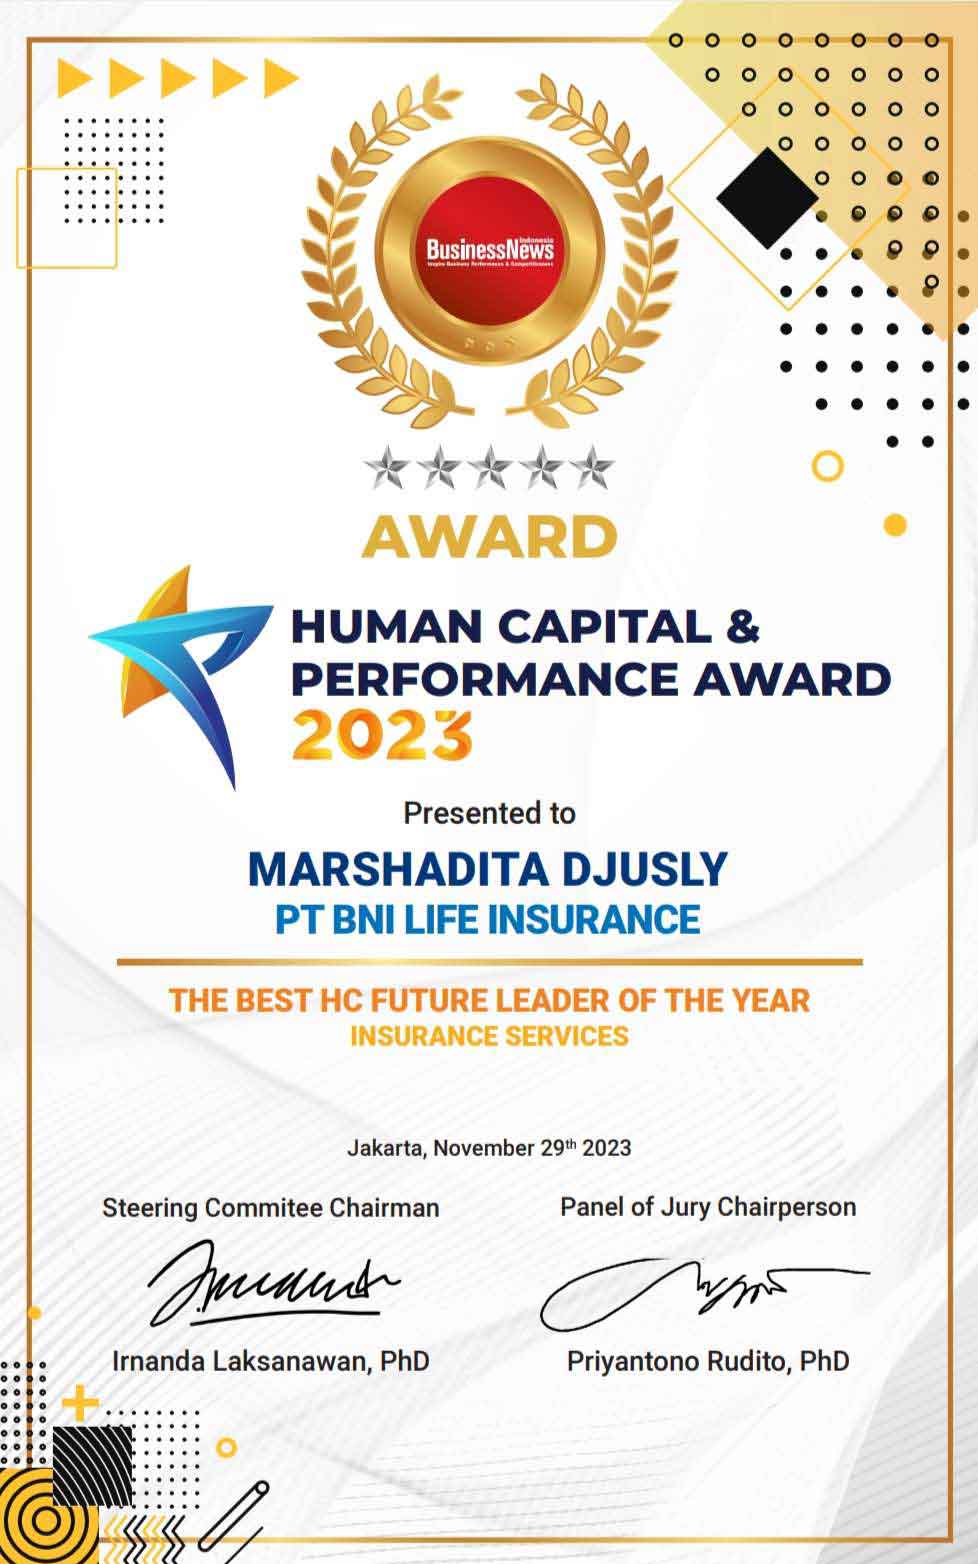 Human Capital & Performance Award 2023